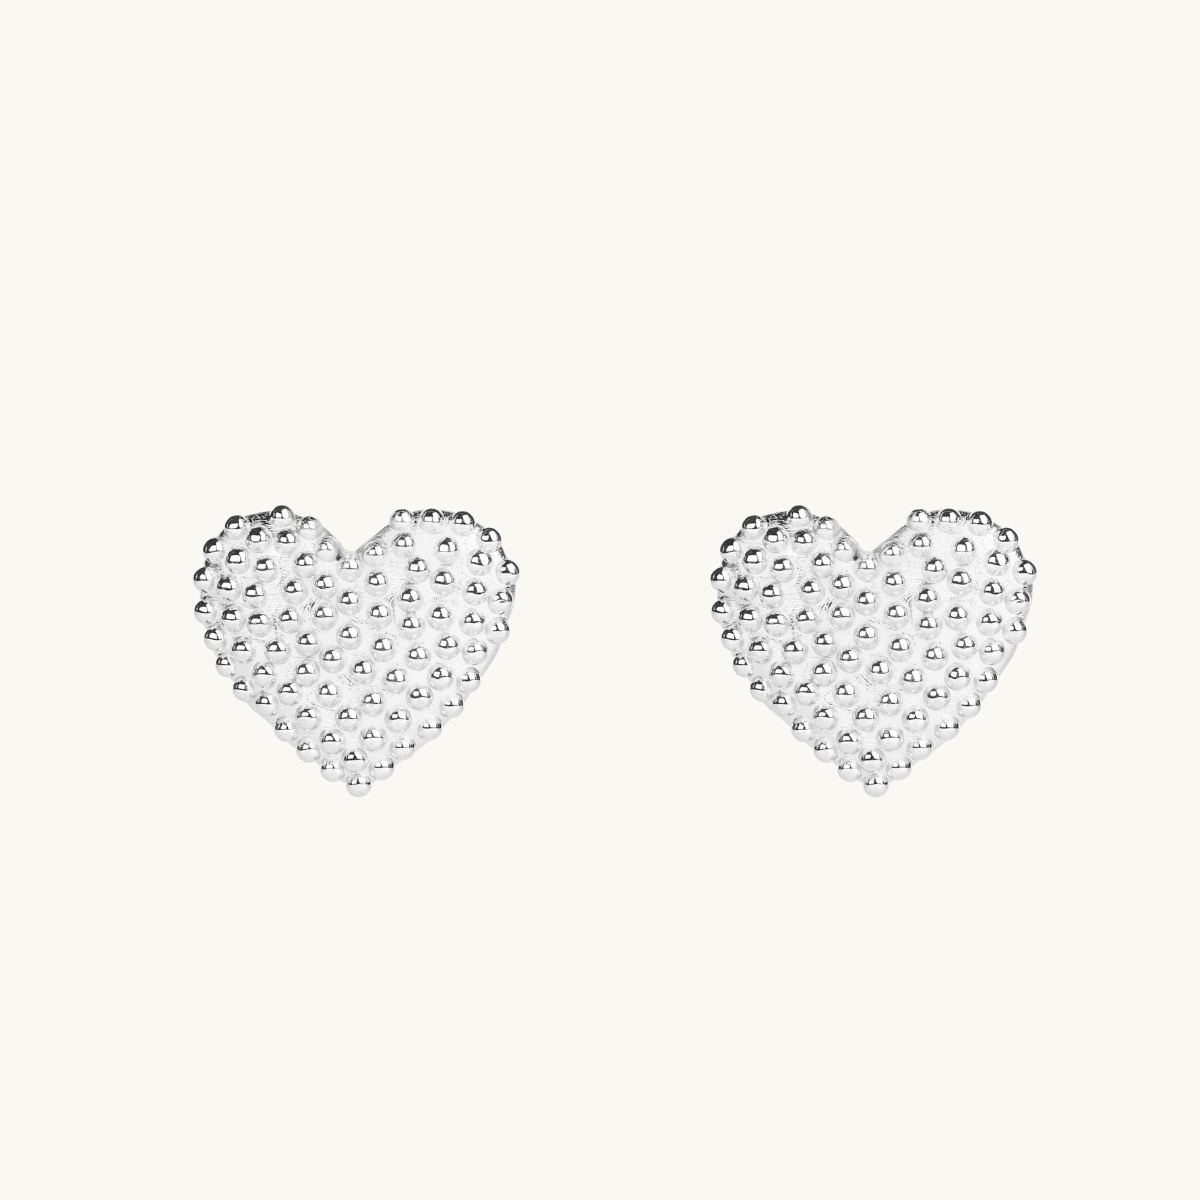 Dew drops on heart earrings in sterling silver. 